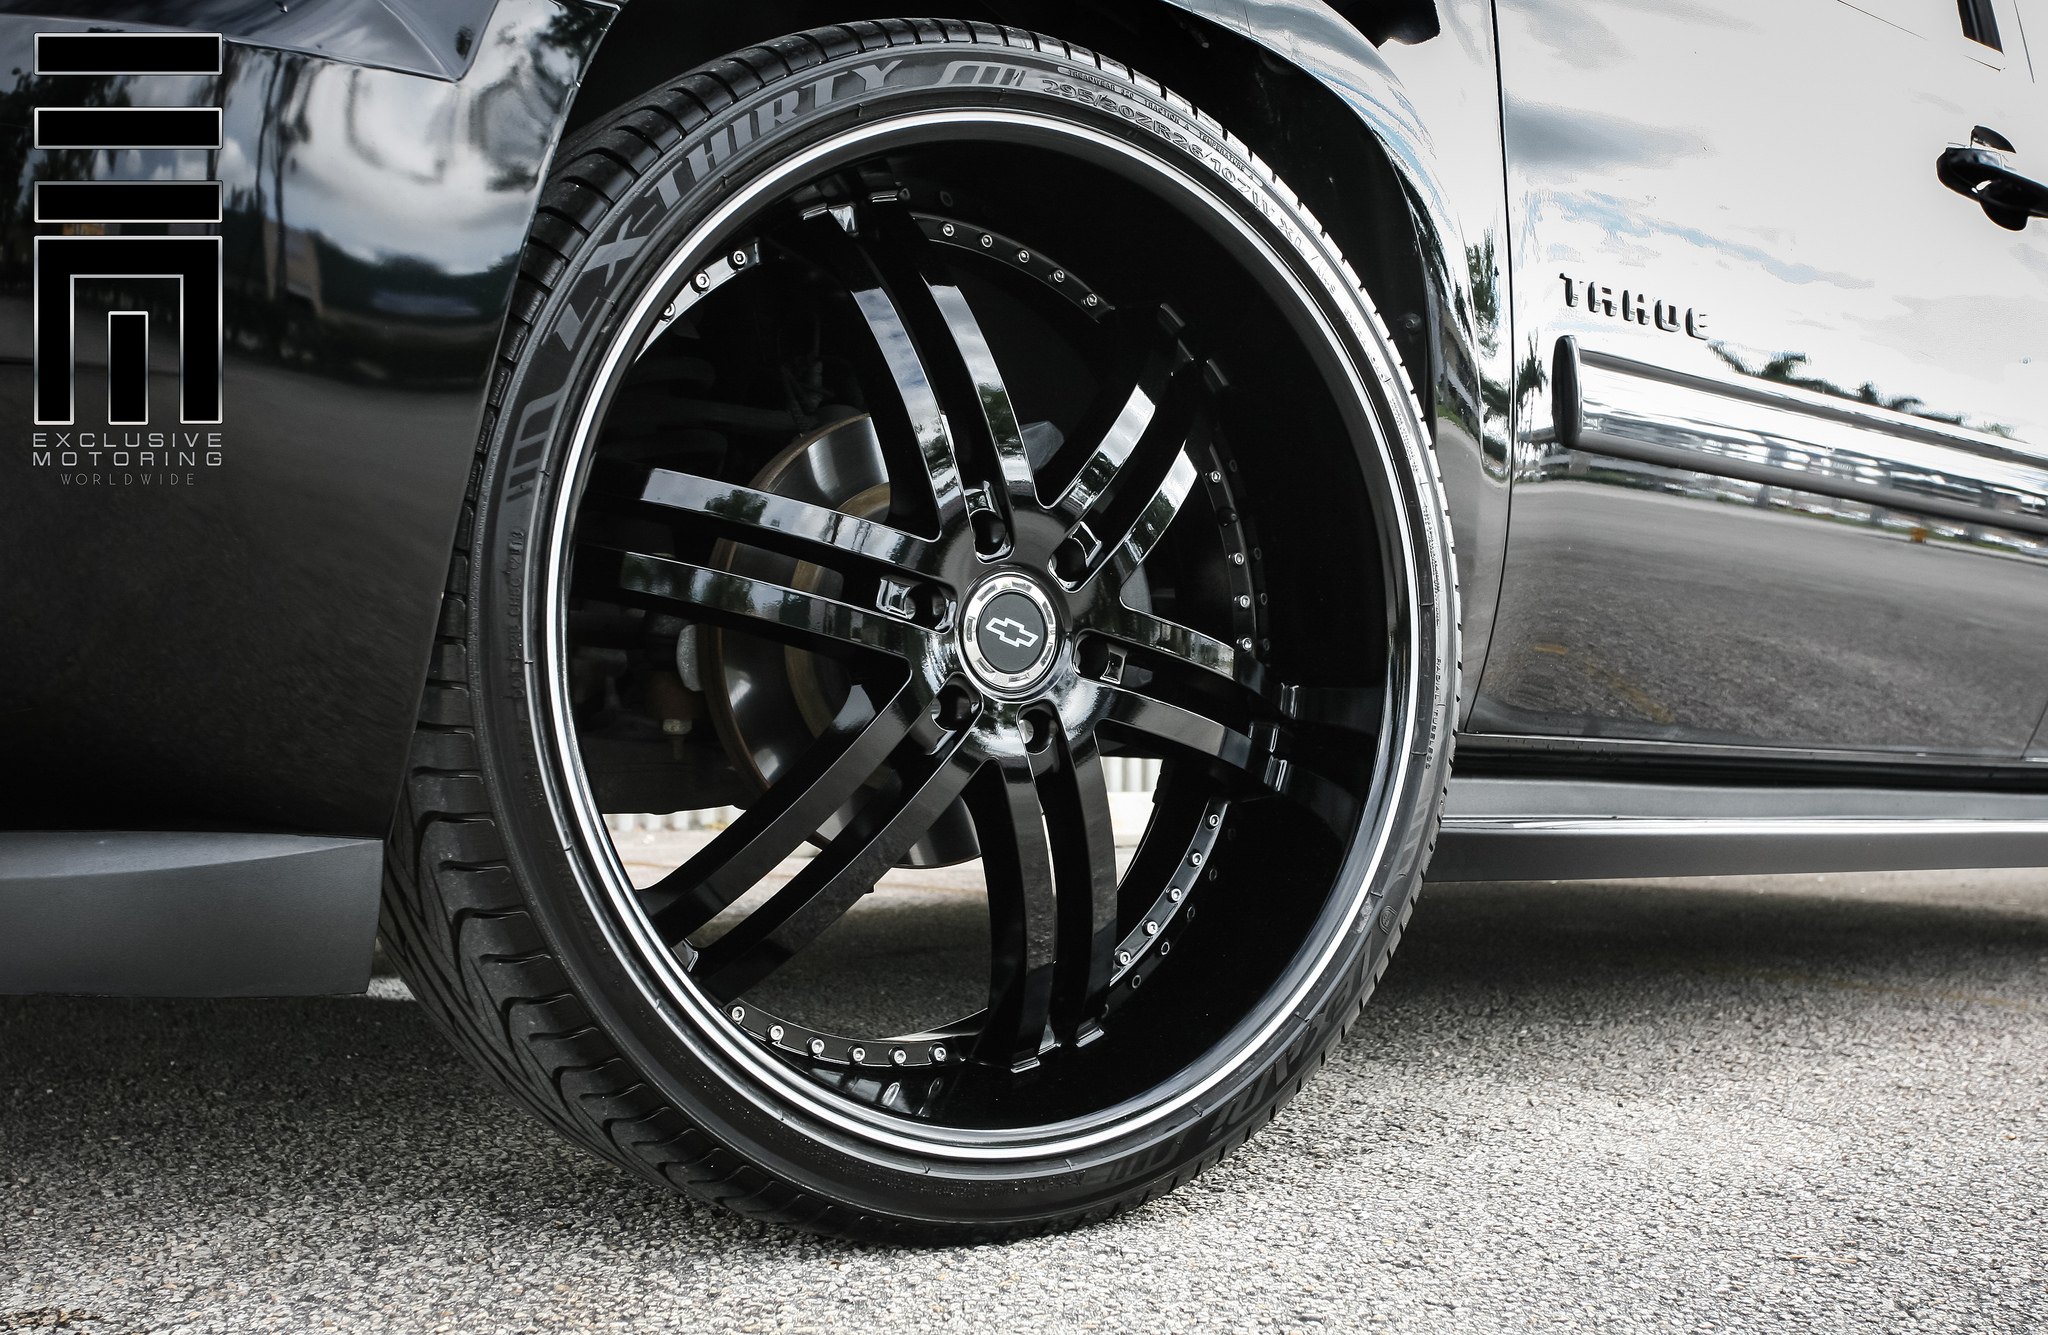 Split 6 spoke wheels on Black Tahoe - Photo by Exclusive Motoring